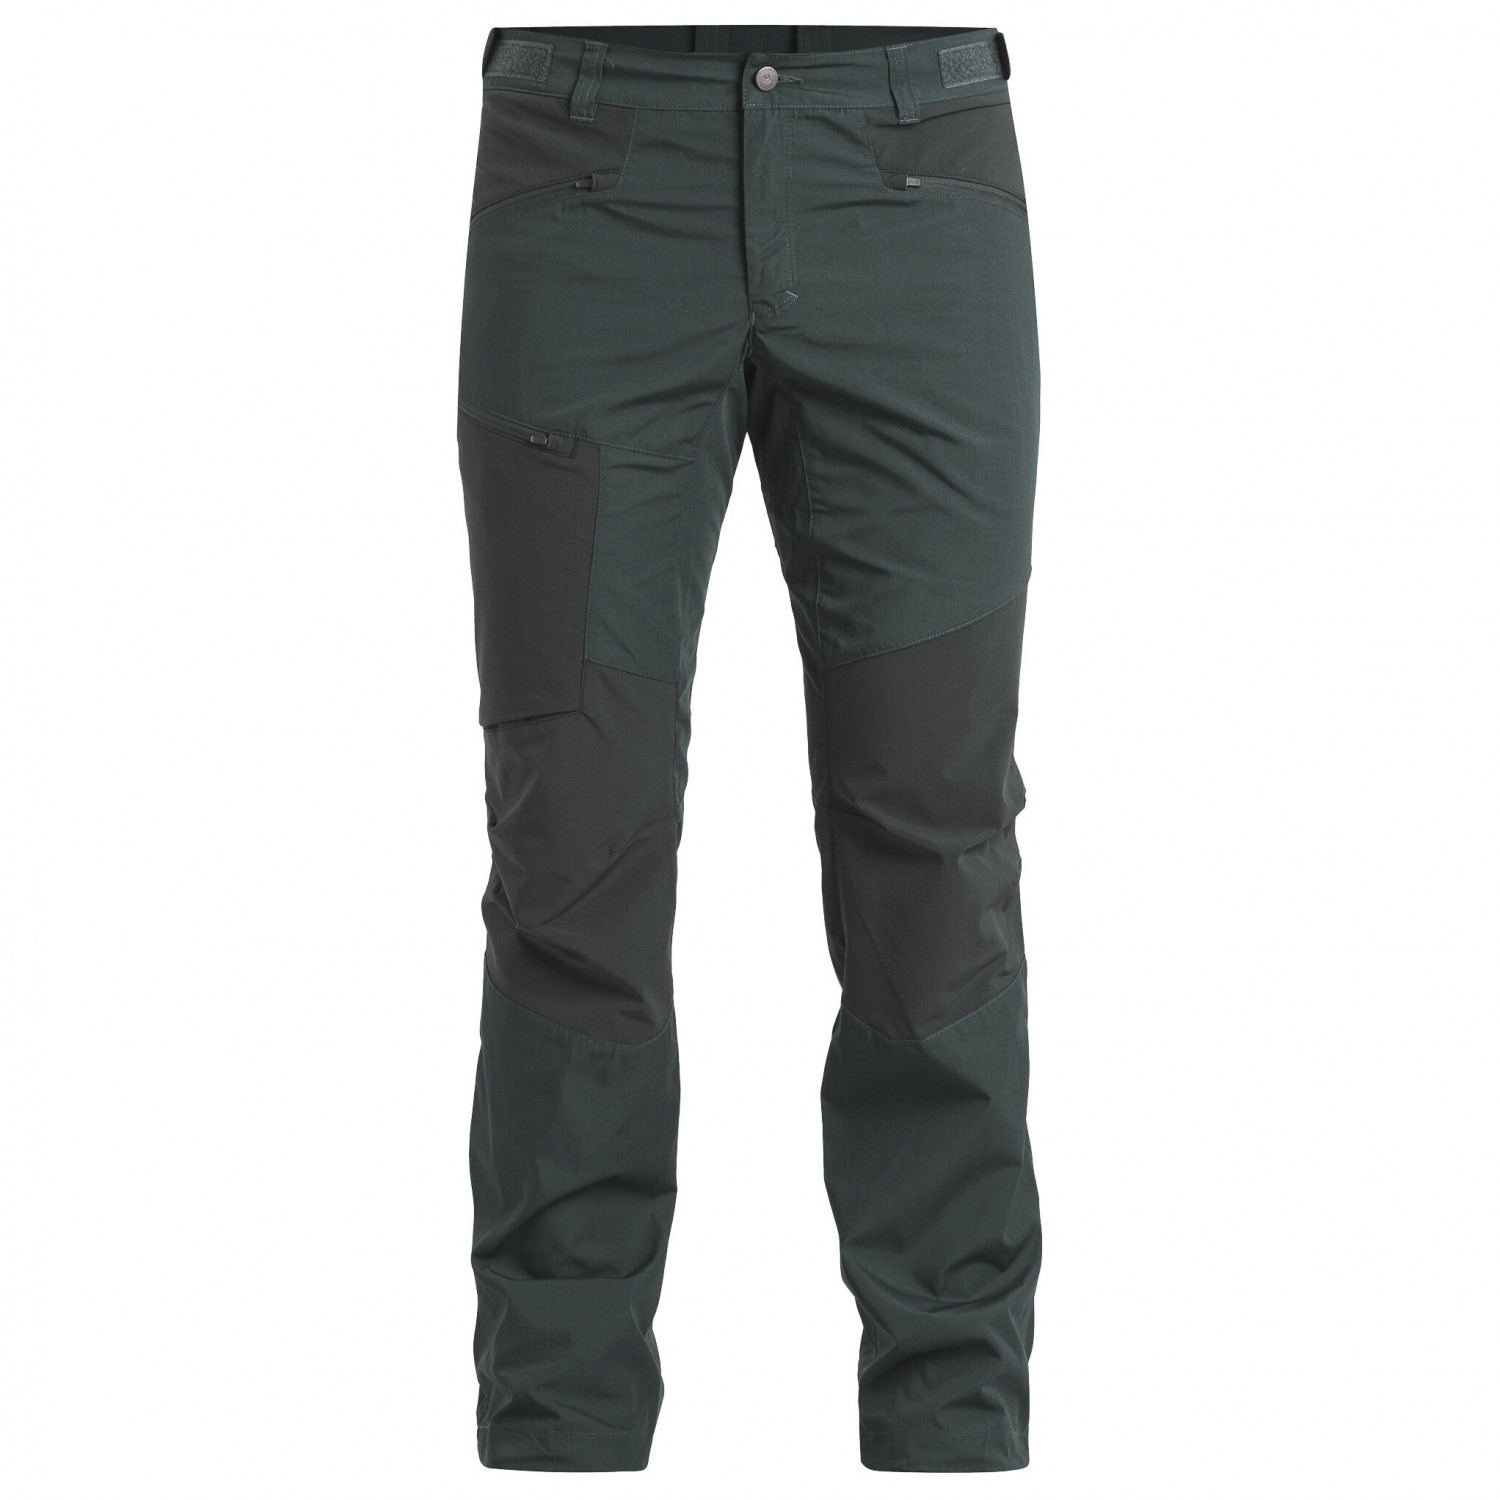 Трекинговые брюки Lundhags Makke Light Pant, цвет Dark Agave/Seaweed